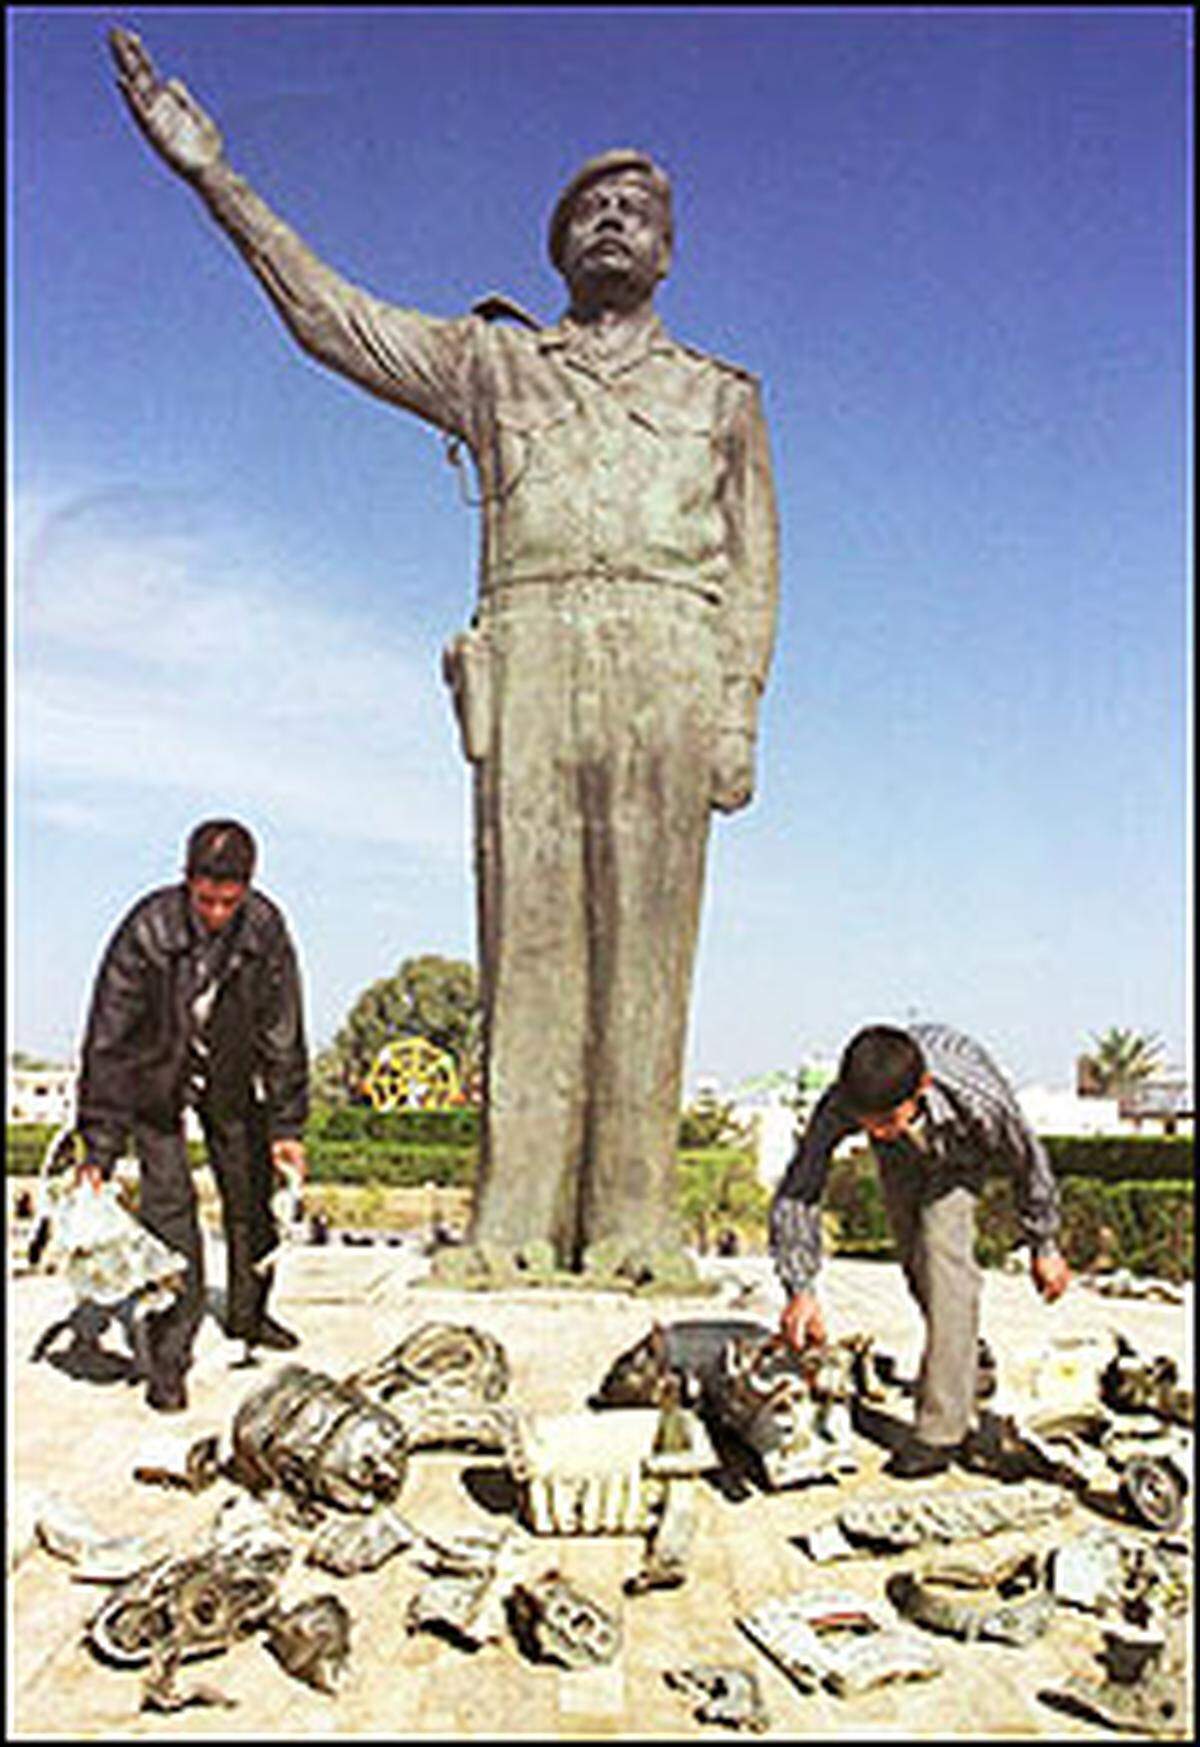 Nach den Anschlägen vom 11. September 2001 in den USA stellte US-Präsident George W. Bush den 66-jährigen Saddam in den Mittelpunkt des von ihm ausgerufenen Krieges gegen den Terrorismus. Ihm wurde vorgeworfen, über verbotene Massenvernichtungswaffen zu verfügen und den internationalen Terrorismus zu unterstützen, was Saddam stets bestritt. Die Besatzungstruppen konnten aber keine Beweise für die US-Vorwürfe finden.